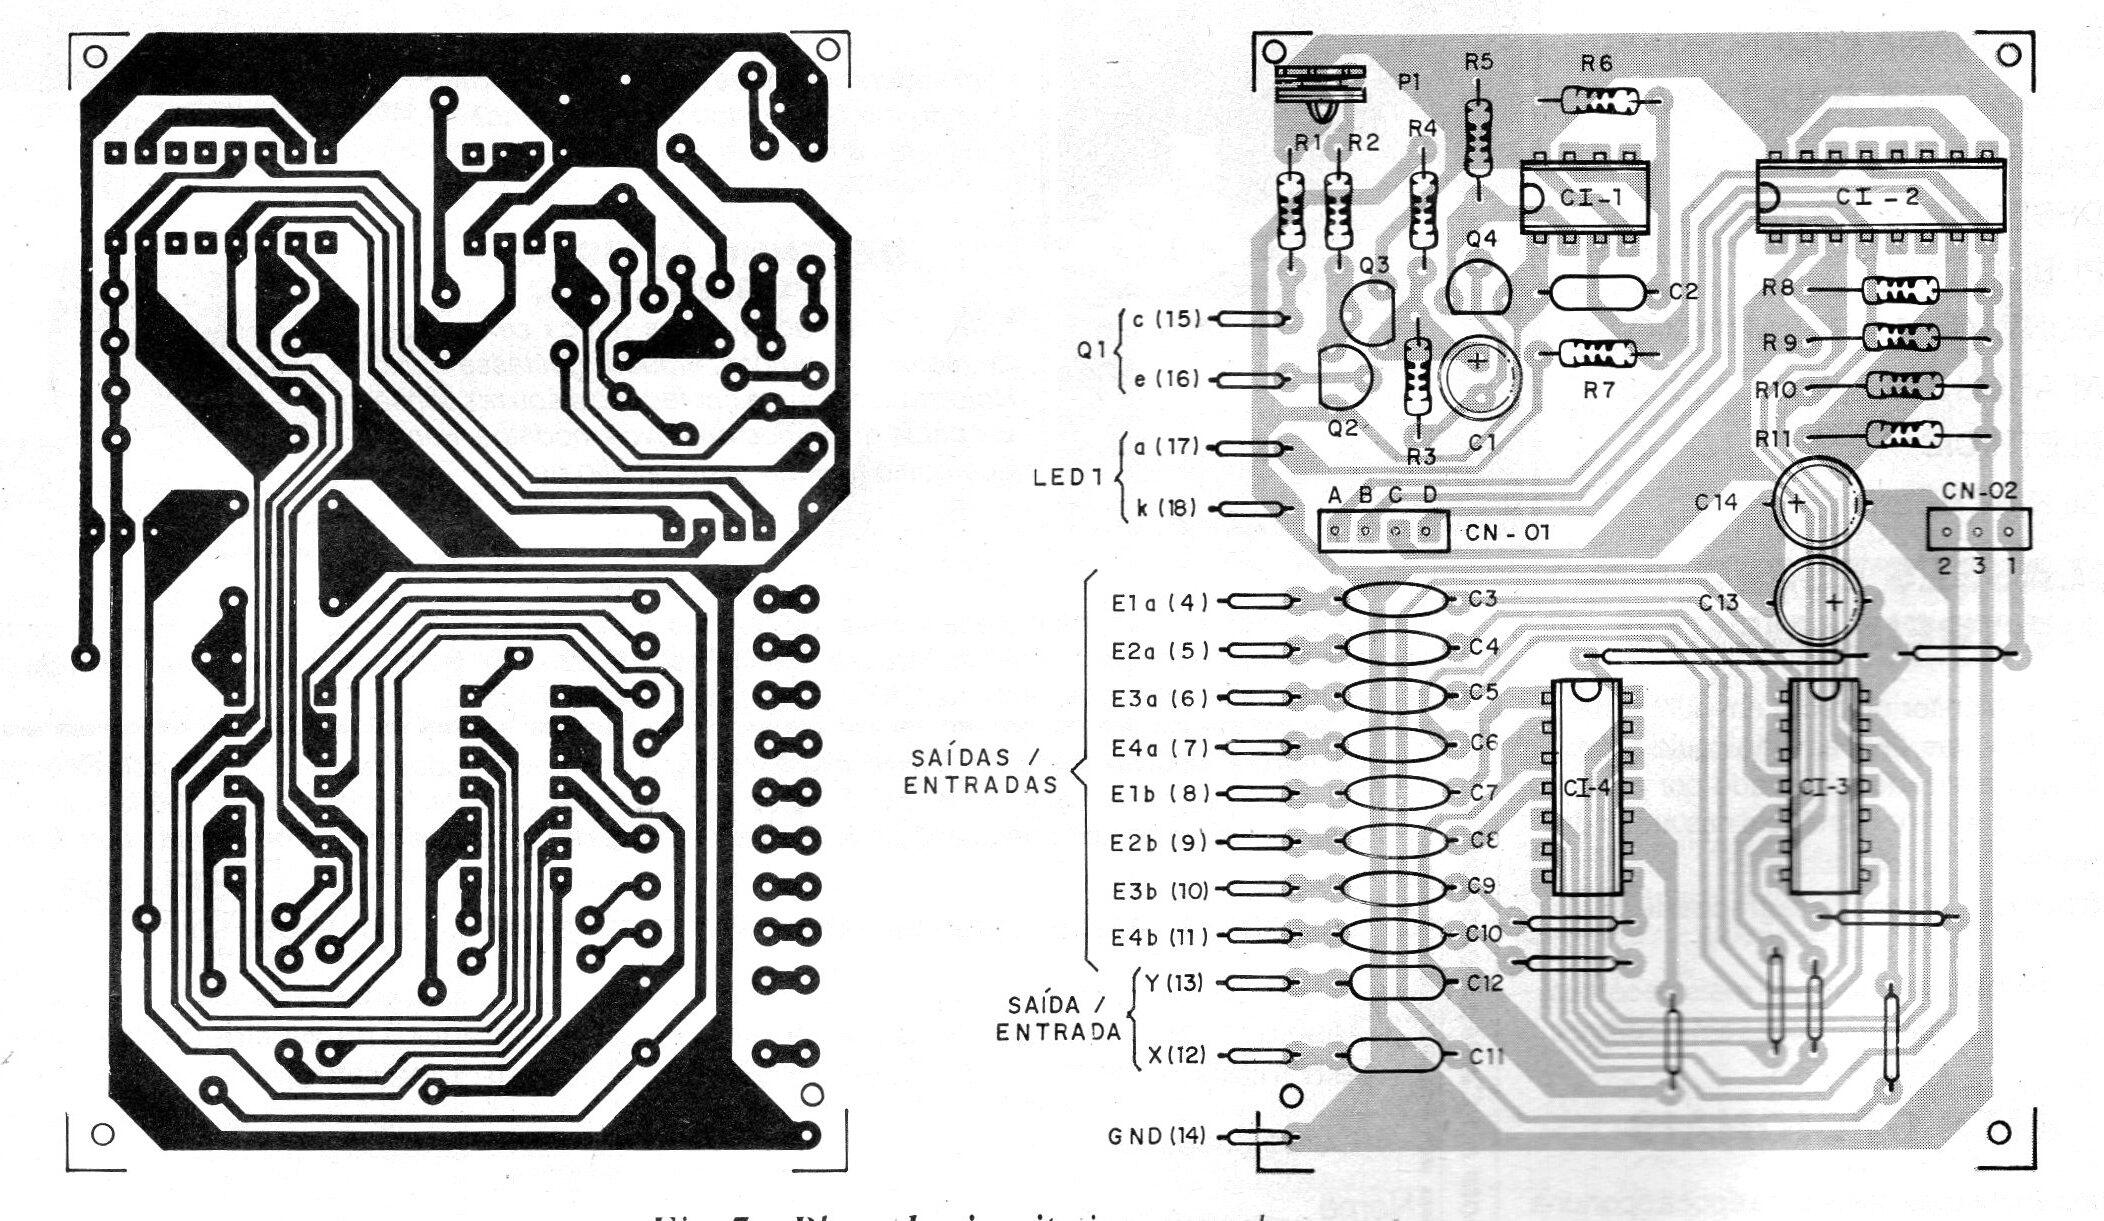    Figura 7 - Placa de circuito impreso del receptor
